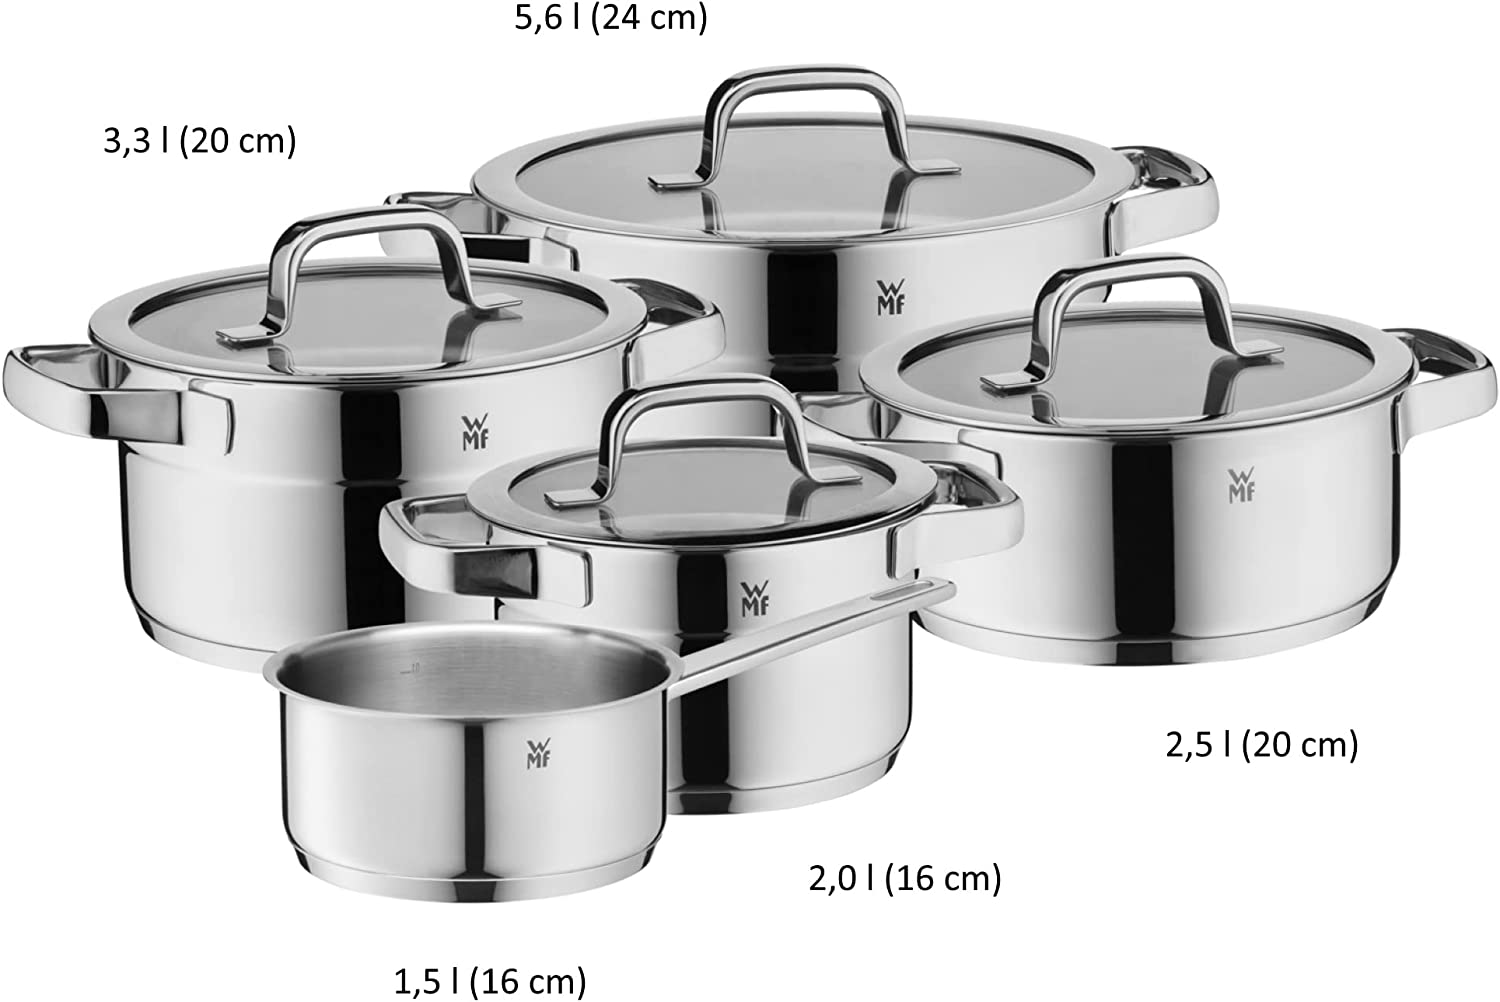 WMF Compact Cuisine Vorteils Topfset Induktion 5-teilig, Kochtopf Set mit Glasdeckel, Cromargan Edelstahl poliert, Töpfe Set unbeschichtet, Innenskalierung